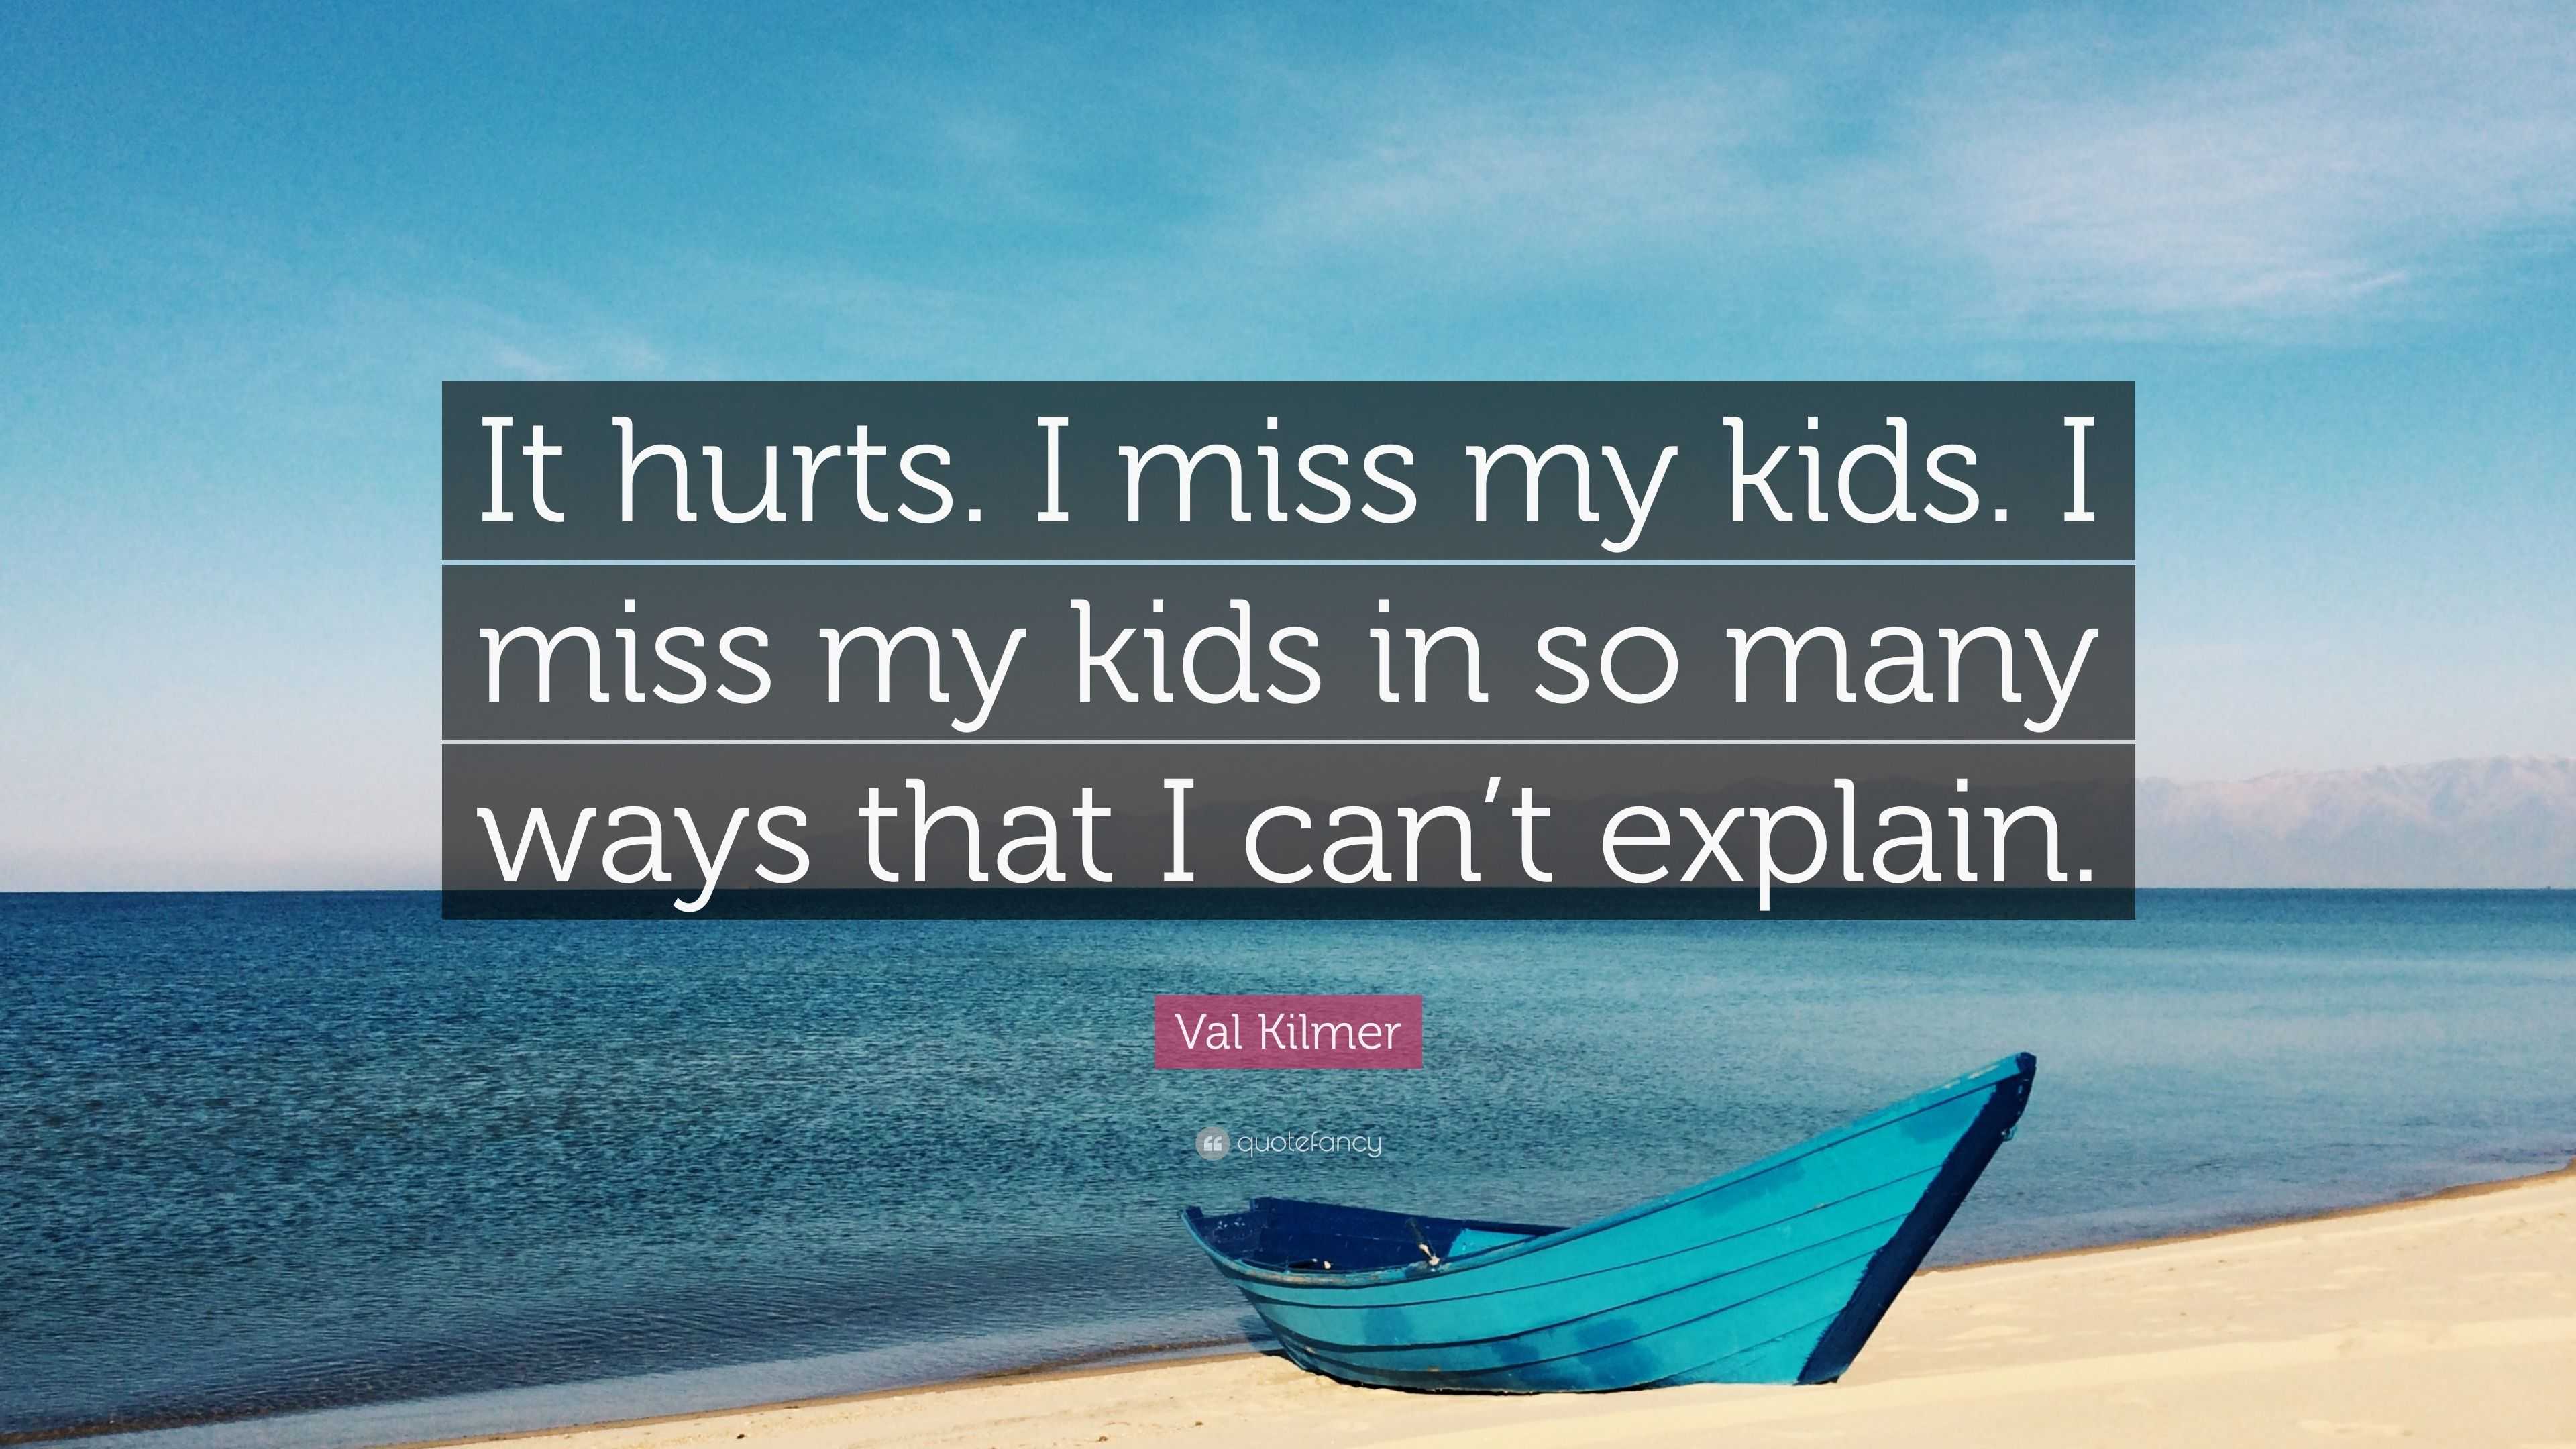 Val Kilmer Quote: “It hurts. I miss my kids. I miss my ...